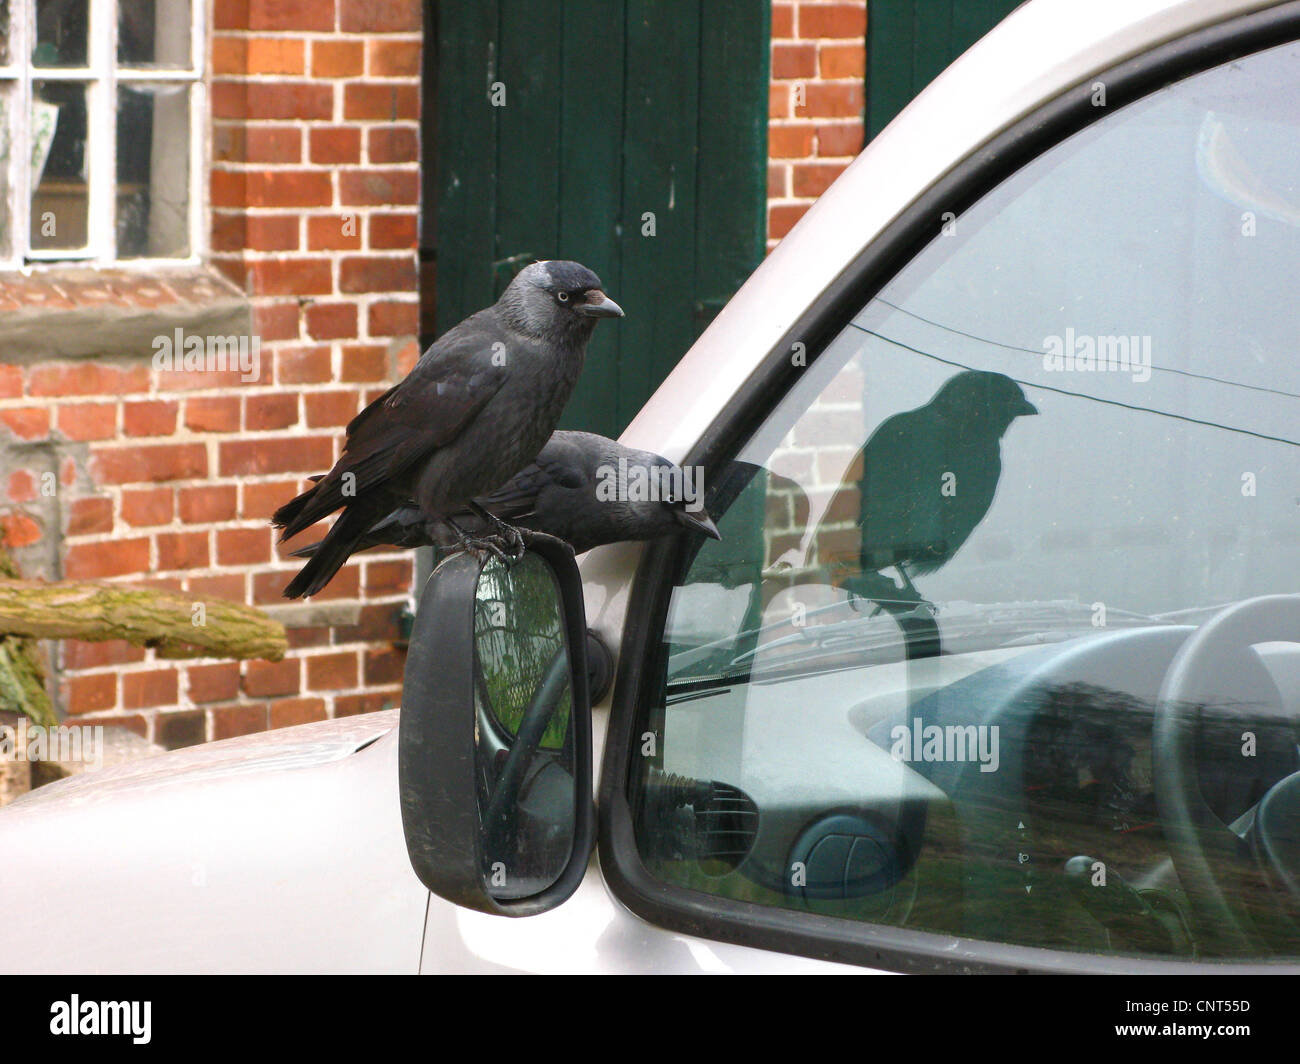 jackdaw (Corvus monedula), two birds on the door mirror of a car Stock Photo